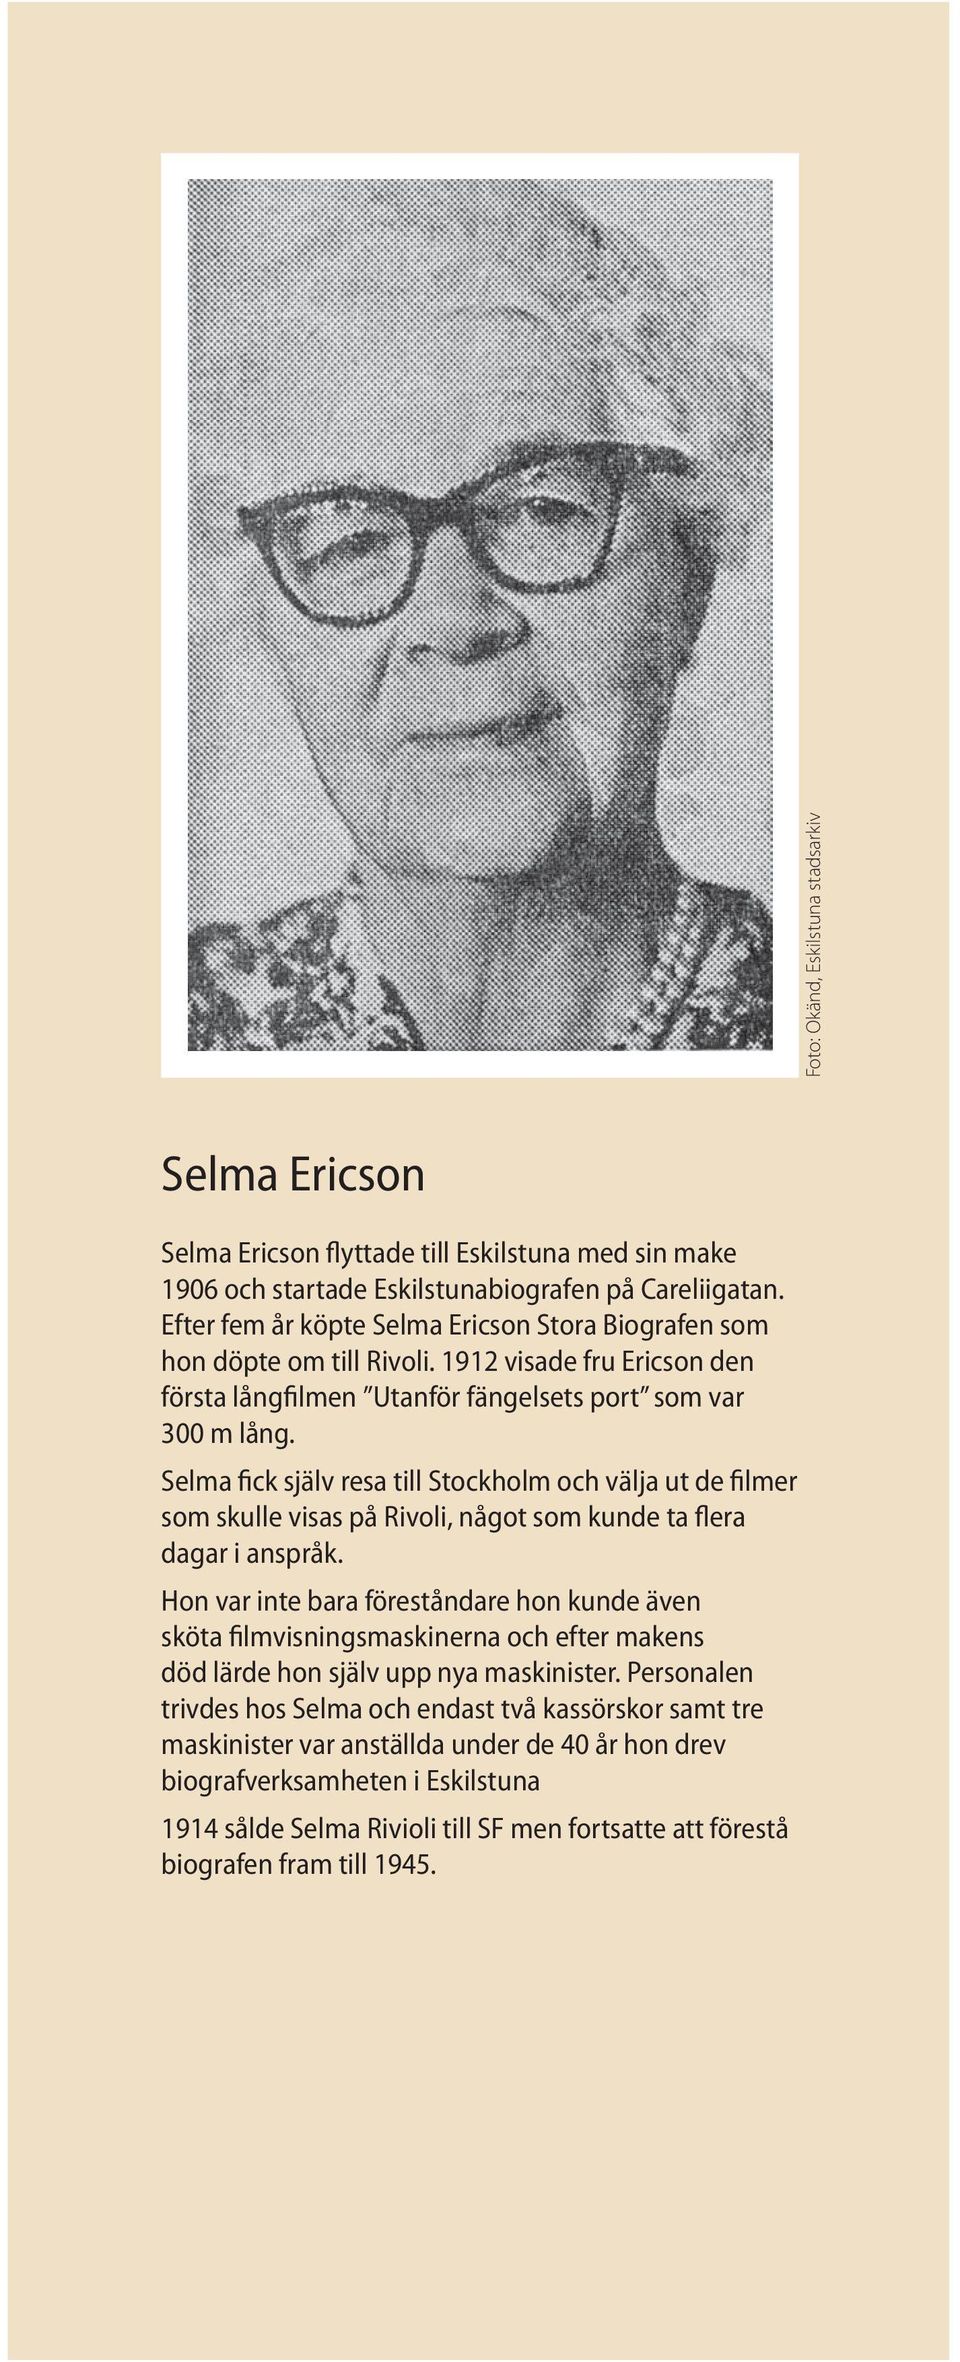 Selma fick själv resa till Stockholm och välja ut de filmer som skulle visas på Rivoli, något som kunde ta flera dagar i anspråk.